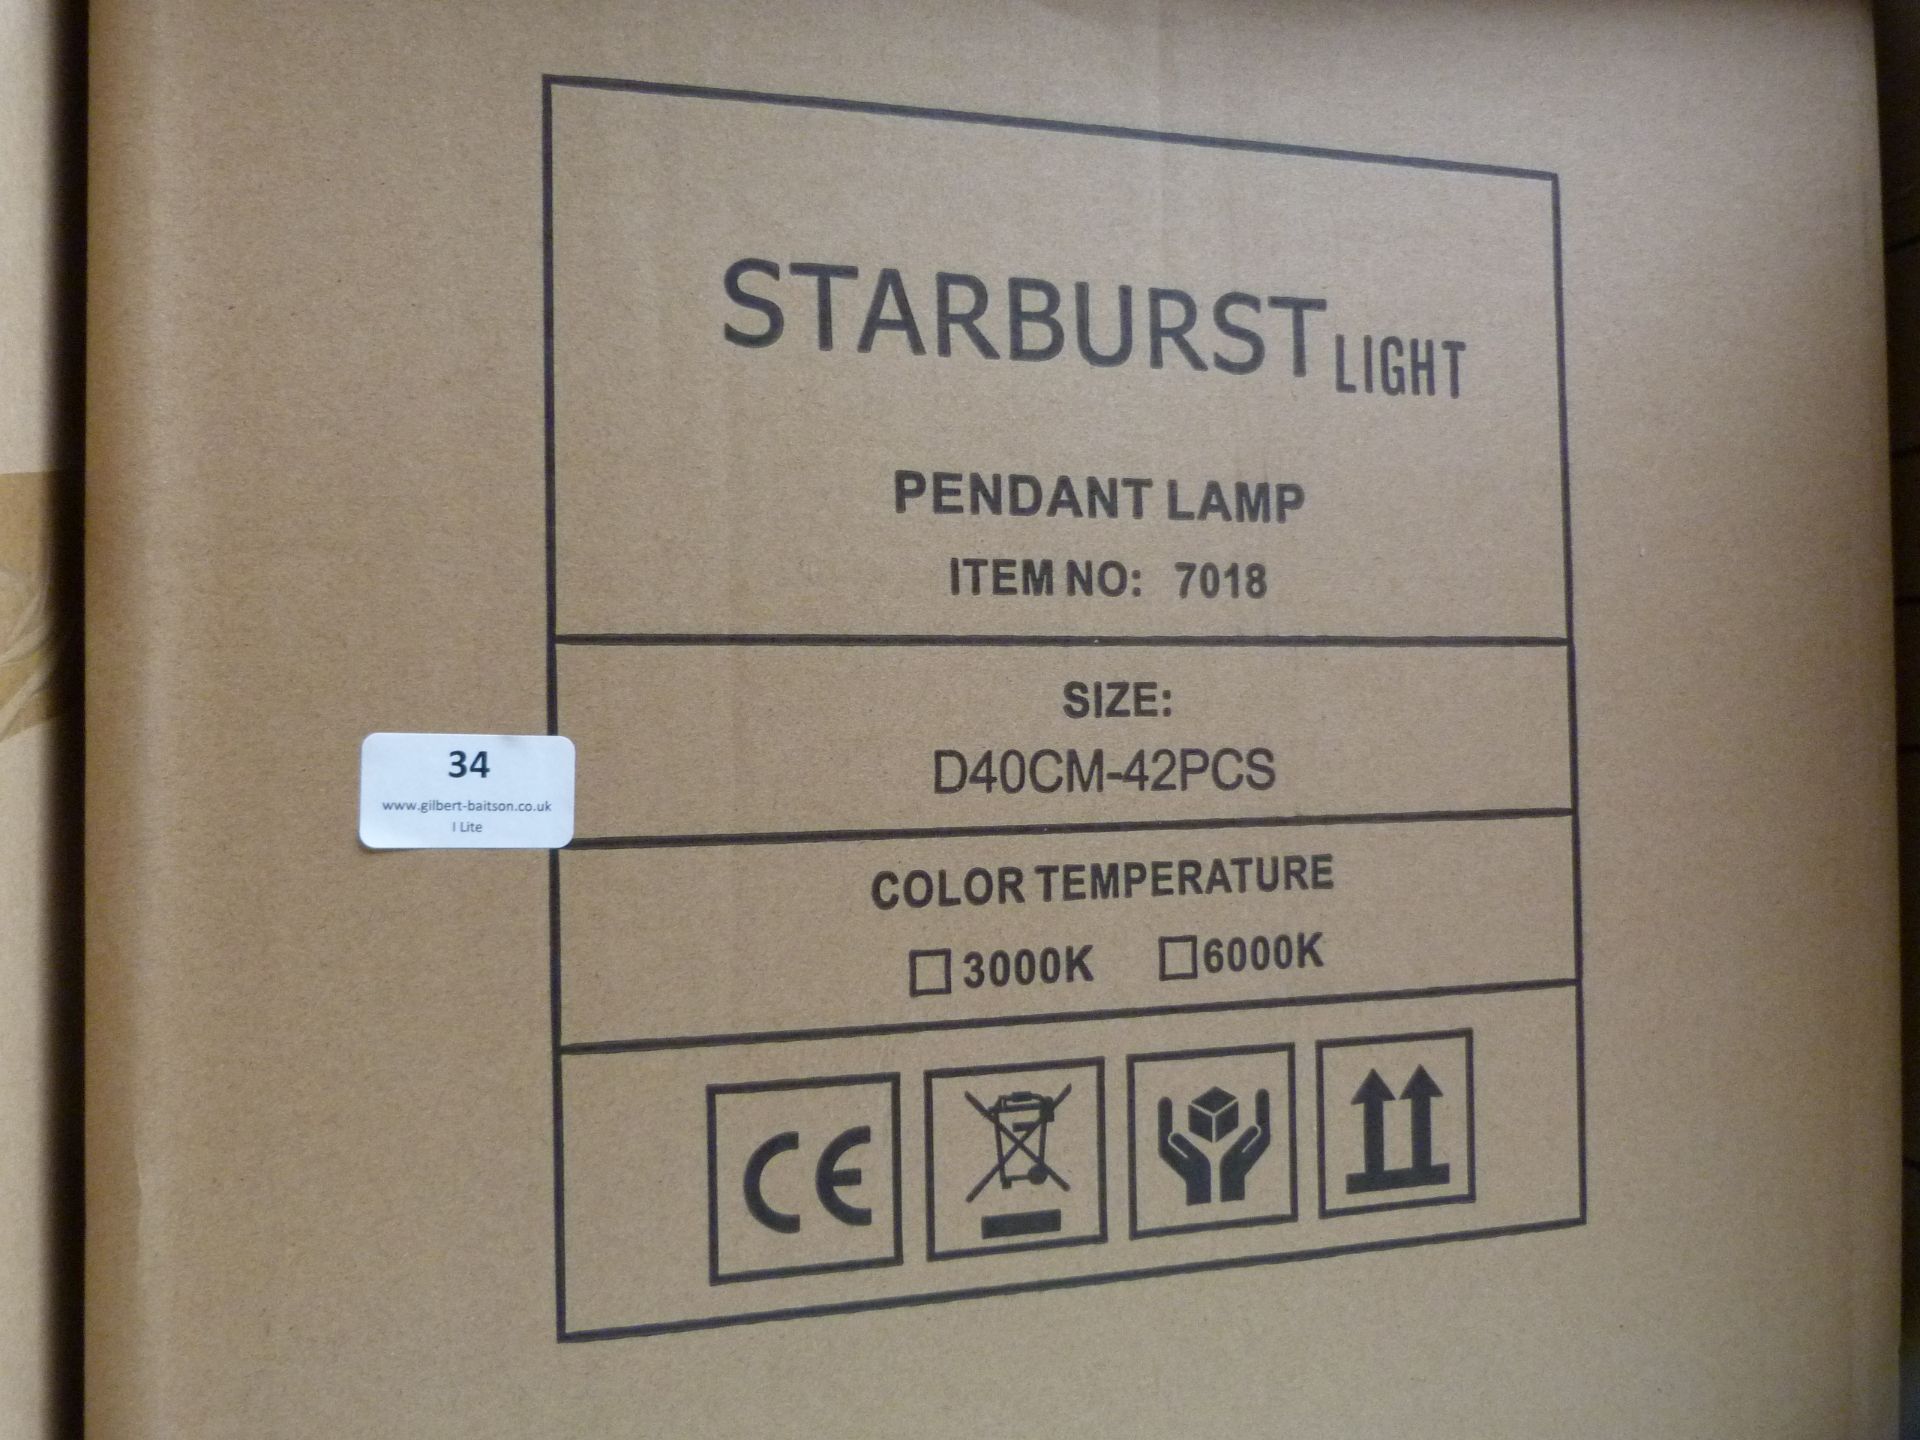 *30 Starburst Pendant Lamps Item No.7018, Size: D40CM-42PCS - Image 2 of 3